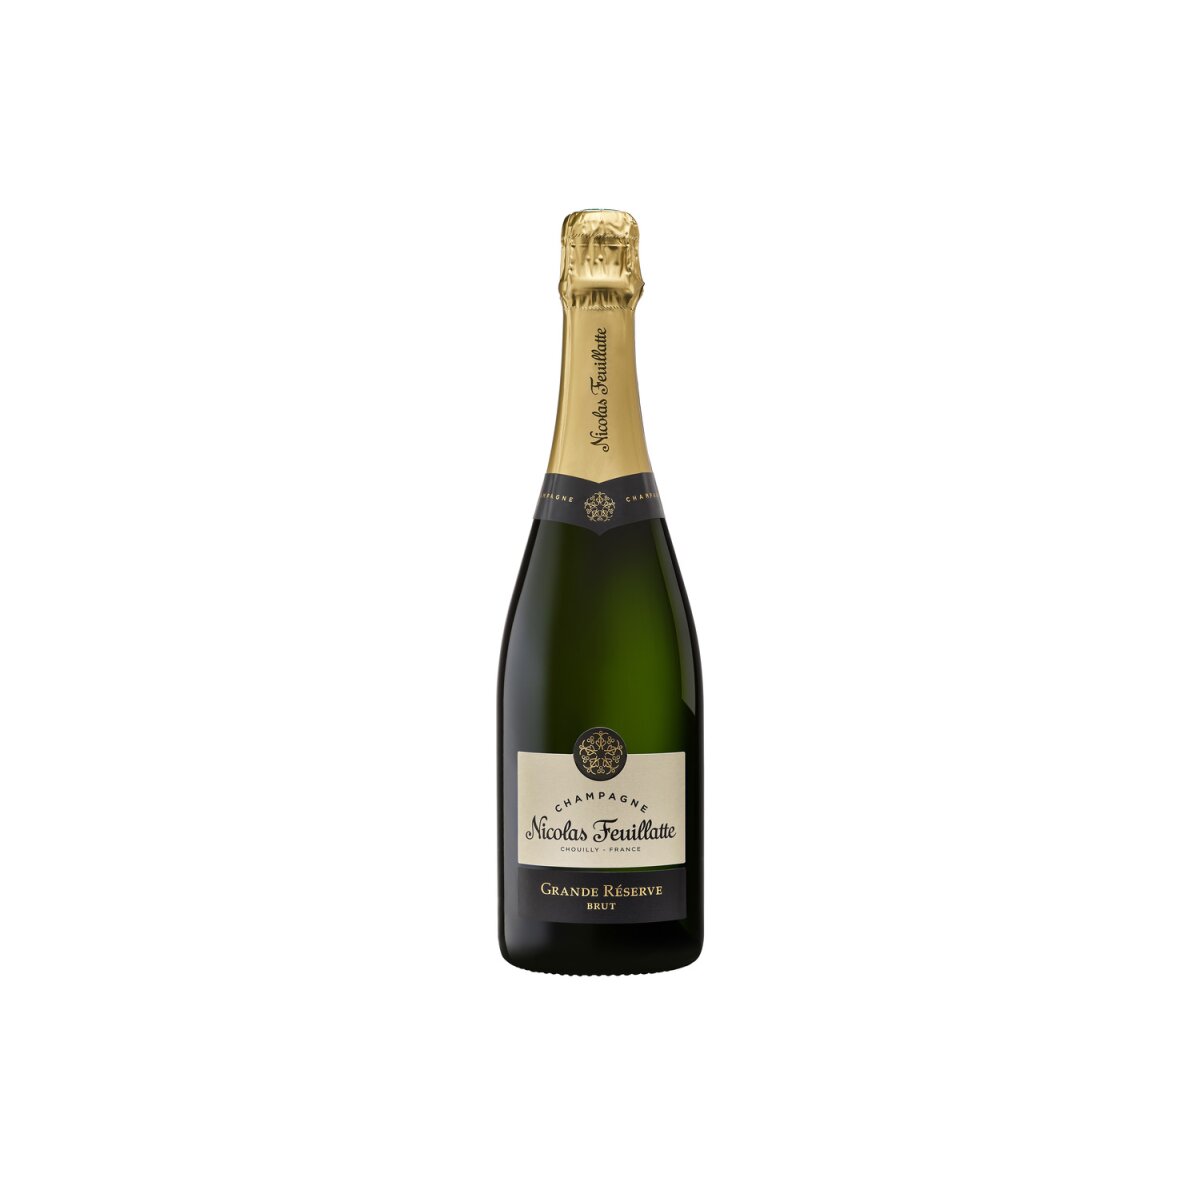 Nicolas 24,99 Réserve Champagner, Brut, Grande Feuillatte €